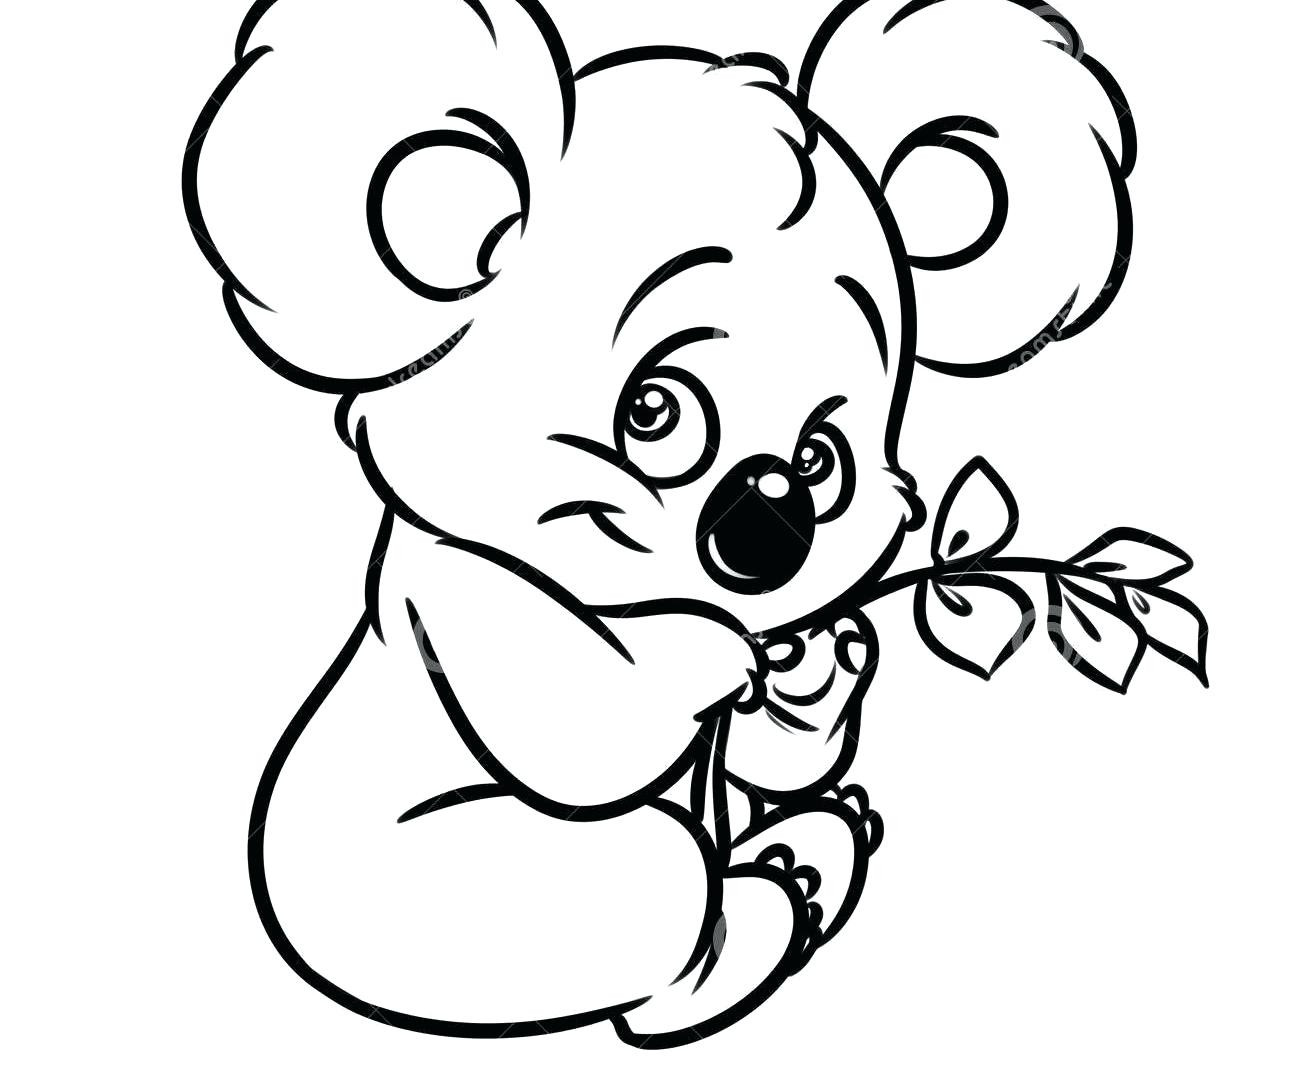 Baby Koala Coloring Pages
 Baby Koala Drawing at GetDrawings